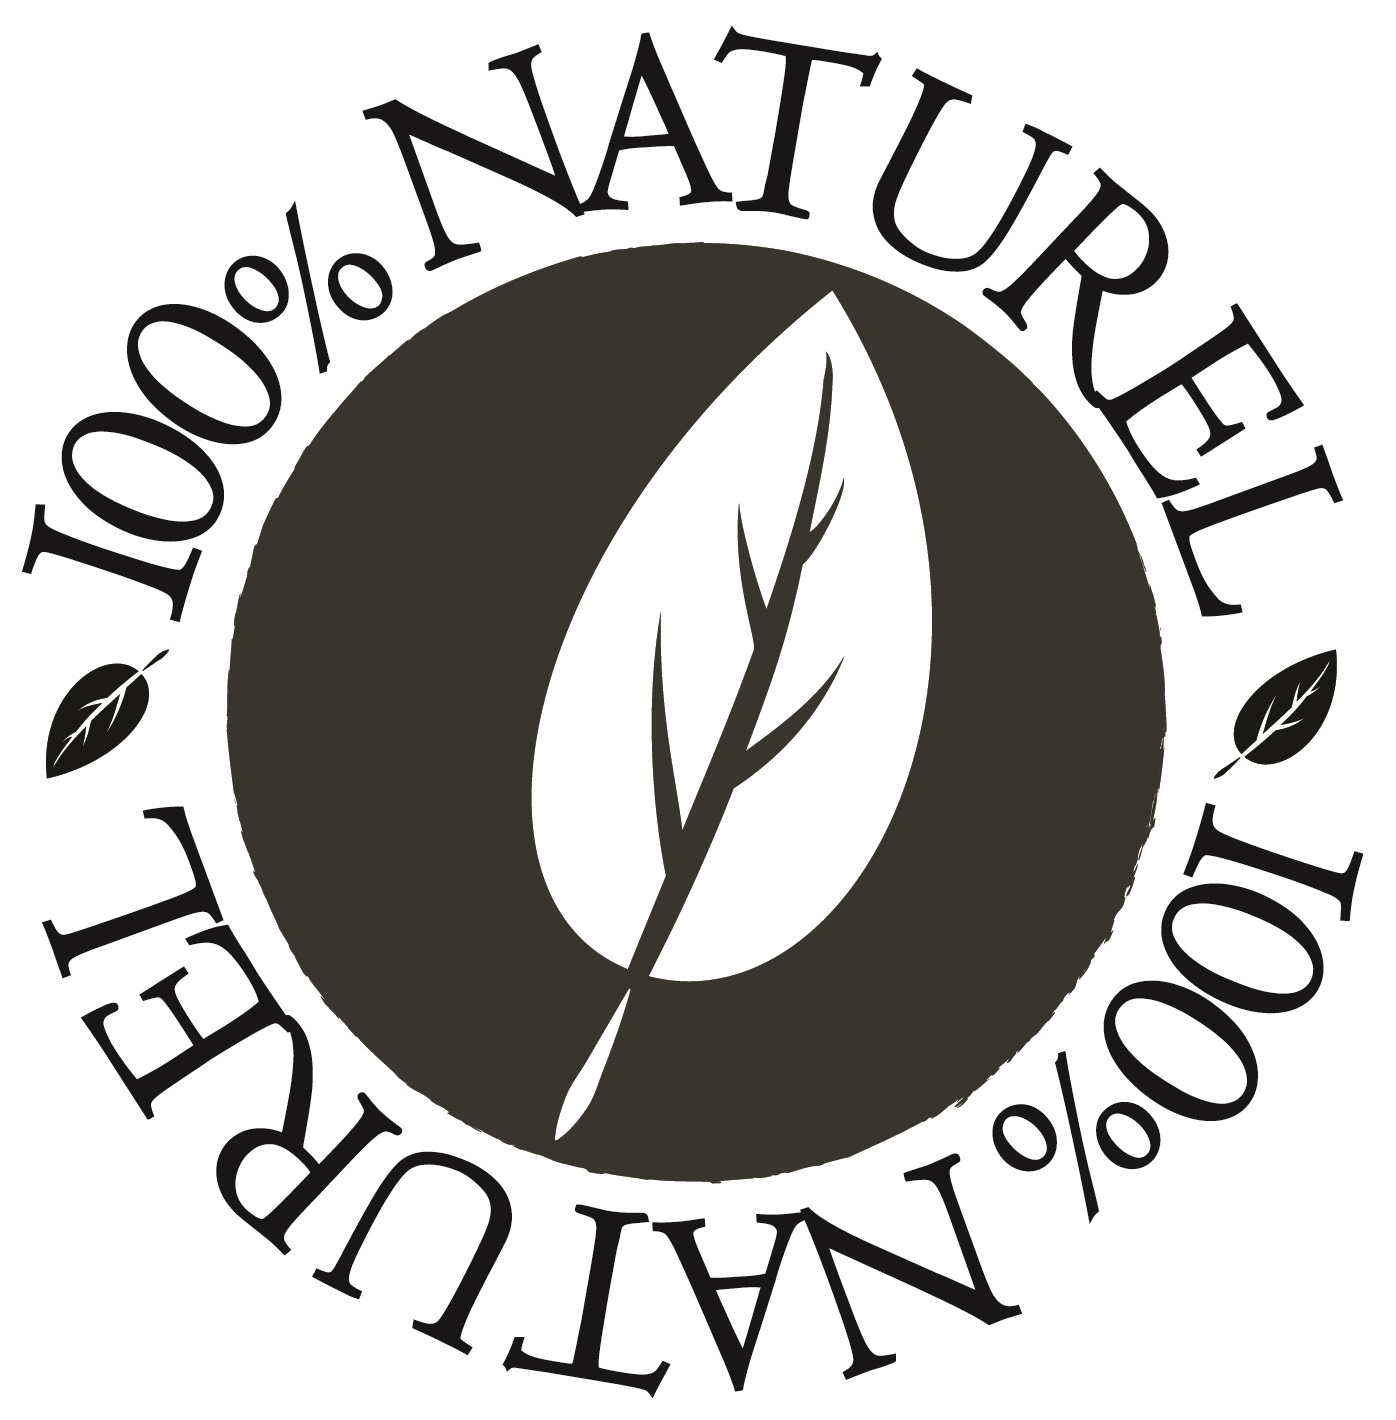 100% naturel